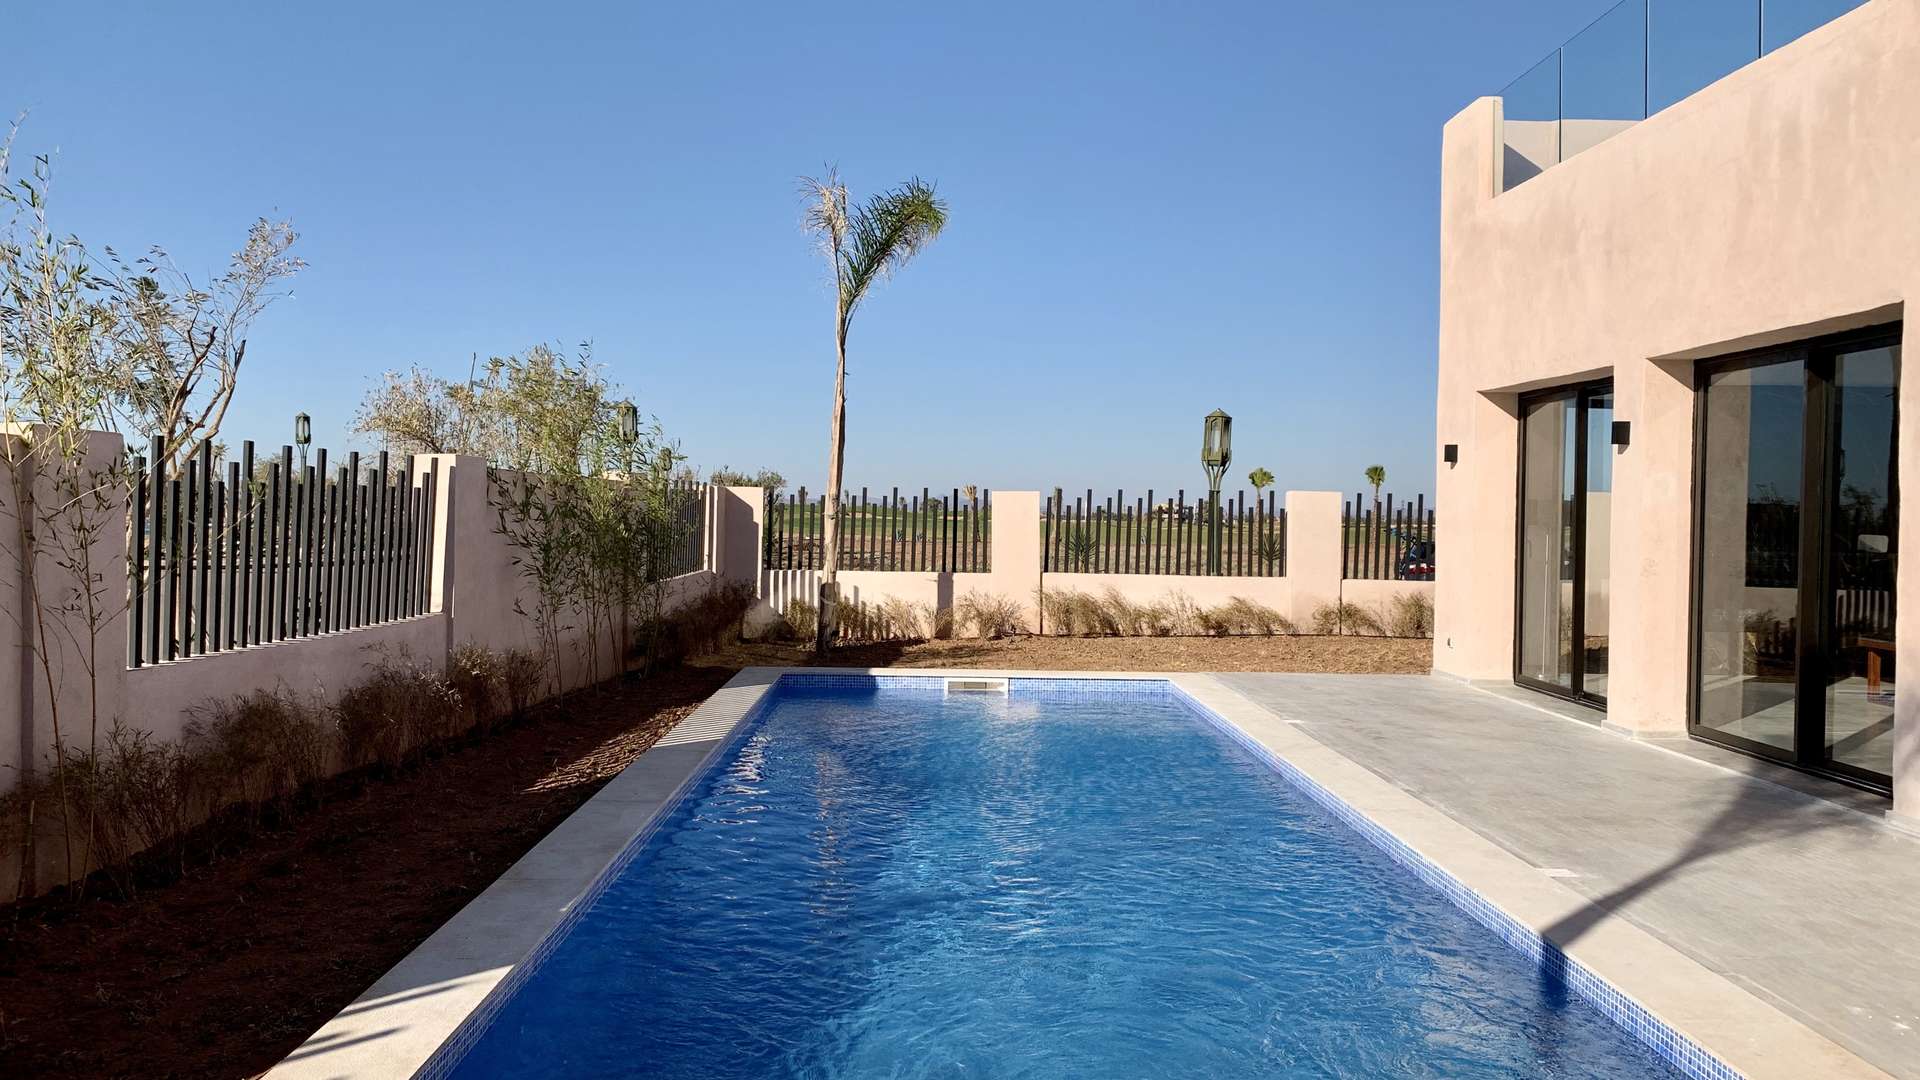 Vente,Villa,Villa neuve de style contemporain sur le golf d'Amelkis à Marrakech,Marrakech,Amelkis Golf Resort